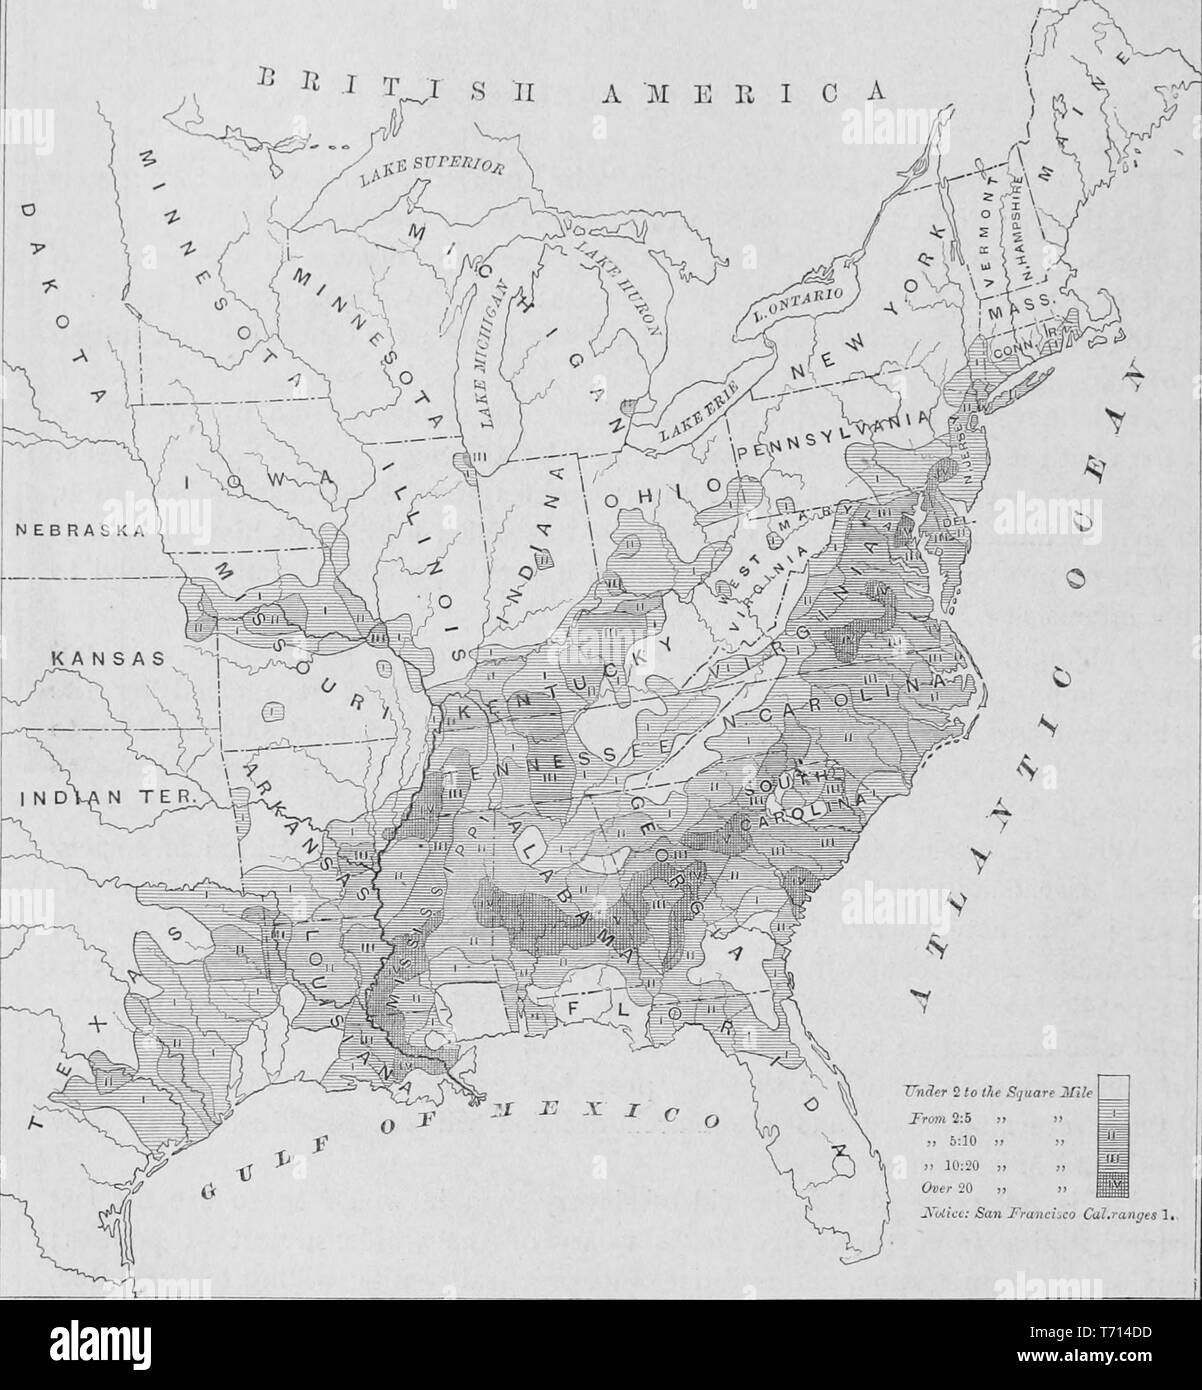 Illustrierte Karte der Verteilung der afroamerikanischen Bevölkerung der Vereinigten Staaten, aus dem Buch "Die südlichen Staaten von Nordamerika" von Edward König, 1875. Mit freundlicher Genehmigung Internet Archive. () Stockfoto